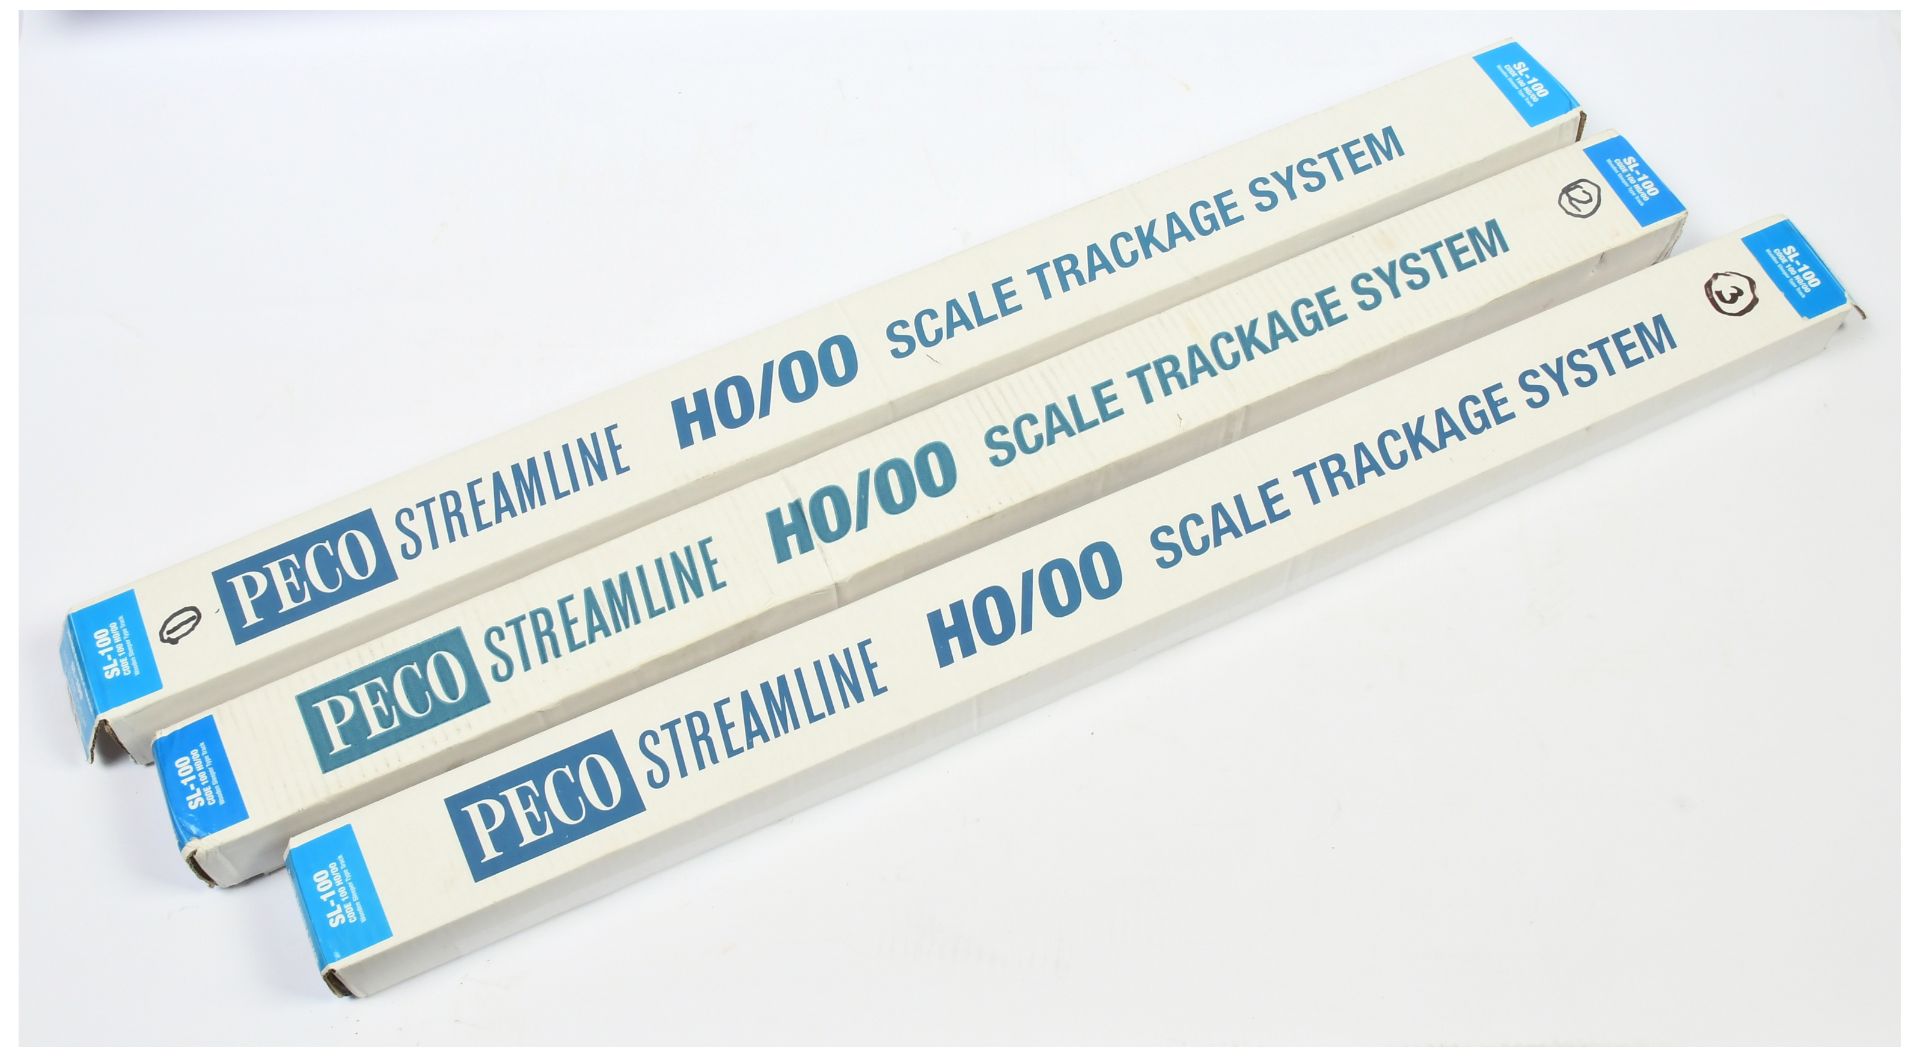 Peco 3 boxes of OO Gauge SL-100 Code 100 Nickel Silver Track